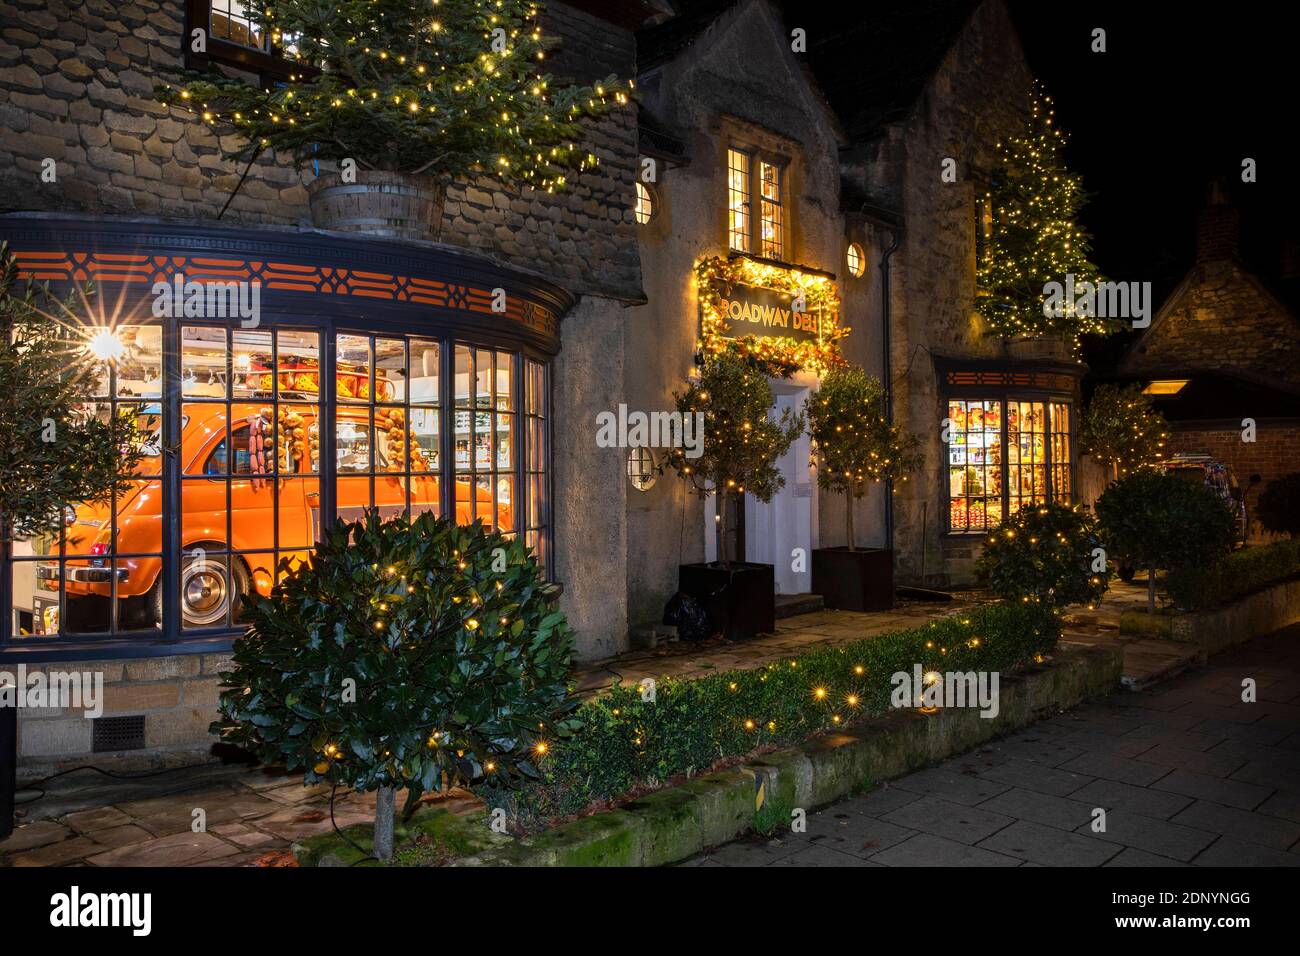 Reino Unido, Gloucestershire, Broadway, High Street, Broadway Deli iluminado para Navidad, con coche en la ventana de la tienda Foto de stock